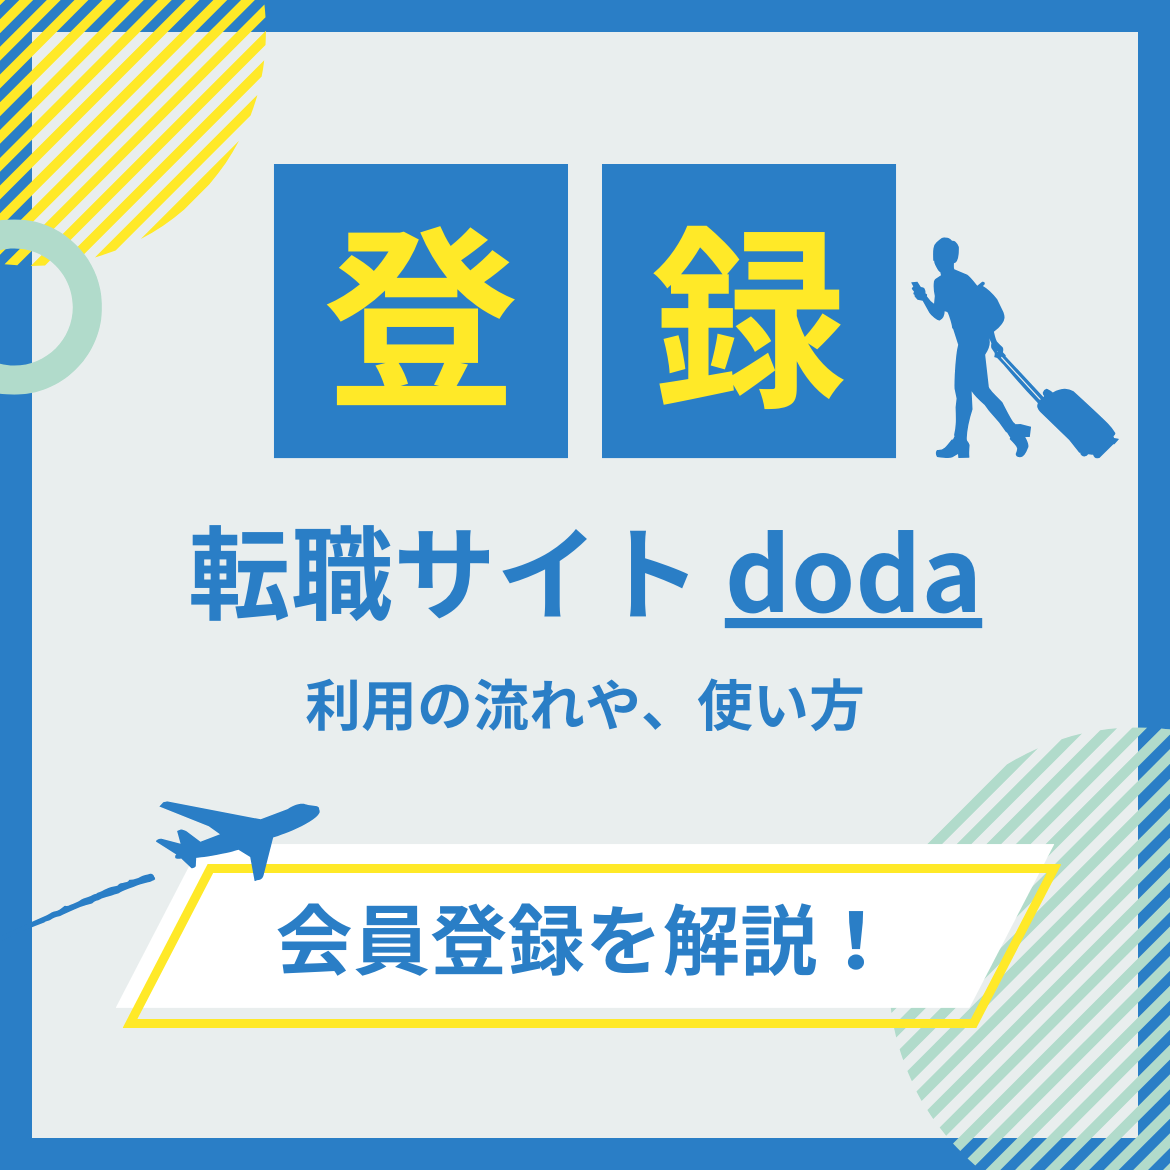 dodaの会員登の方法や利用方法を解説